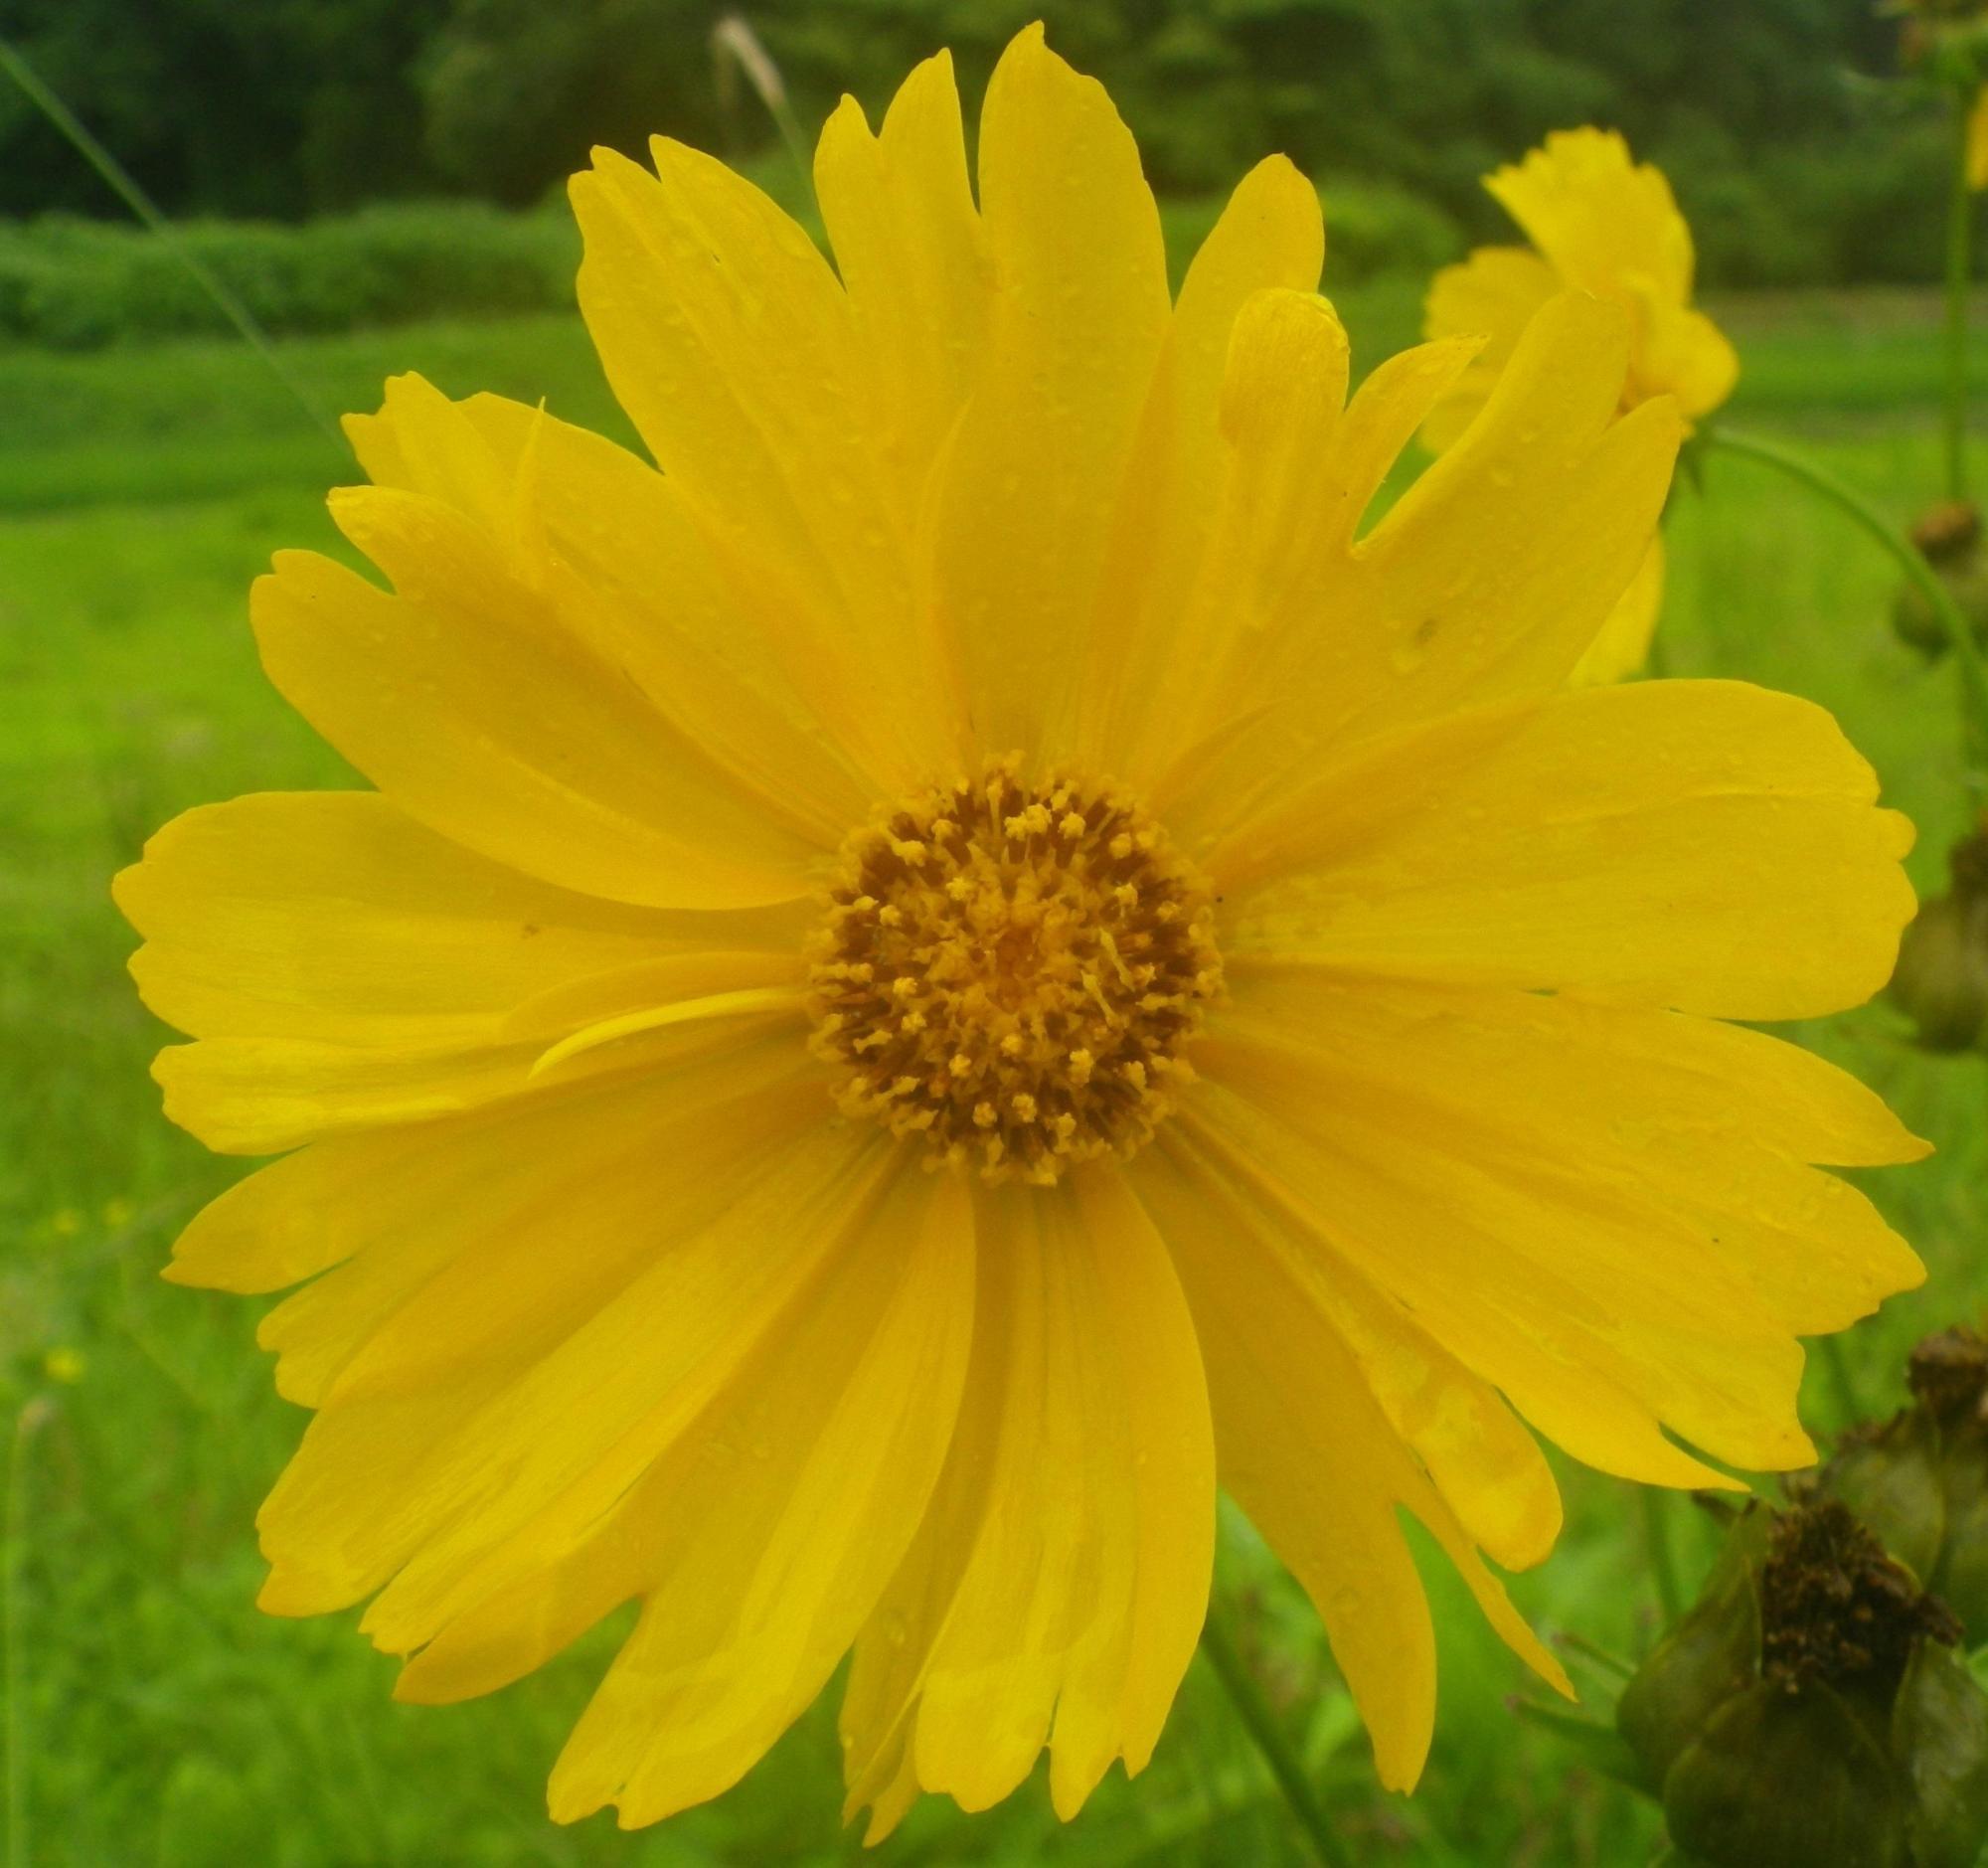 地面の緑を背景に、黄色い花びらに細かく水滴がついているオオキンケイギクのアップの写真